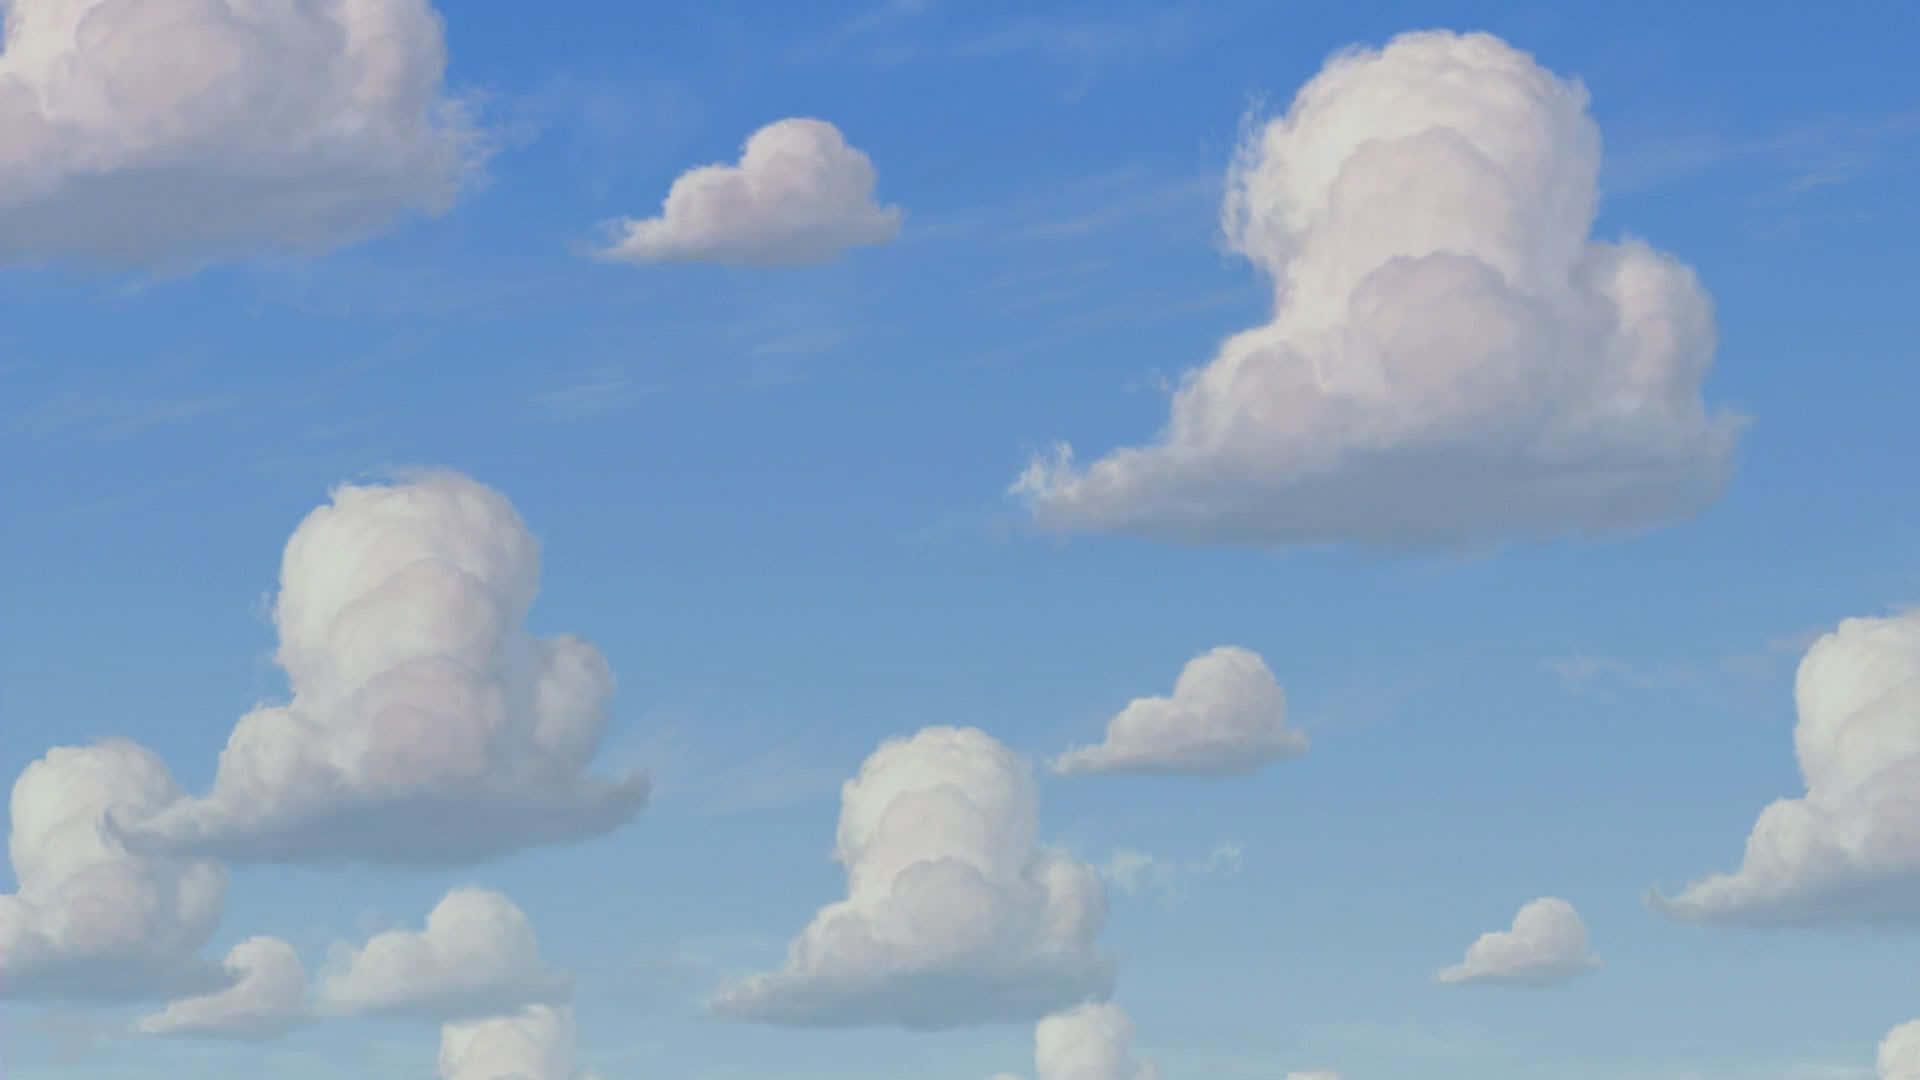 Tittaupp På Himlen Och Se En Dröm Gå I Uppfyllelse - En Toy Story-moln! Wallpaper